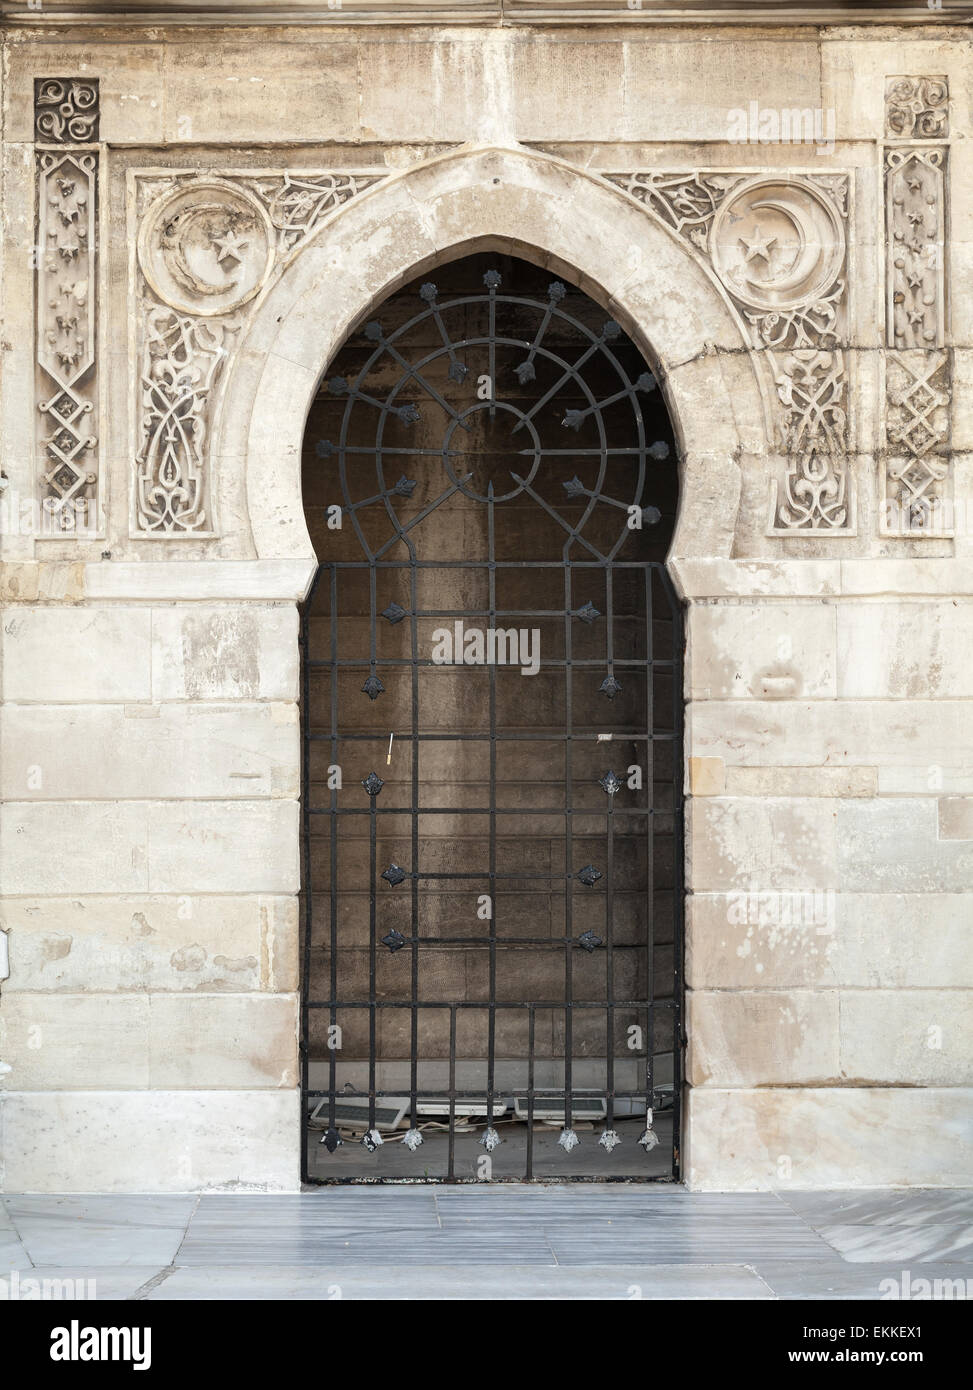 Alten verschlossen Tür mit arabischen Mustern Reliefdekor. Konak Uhrturm, Izmir, Türkei Stockfoto